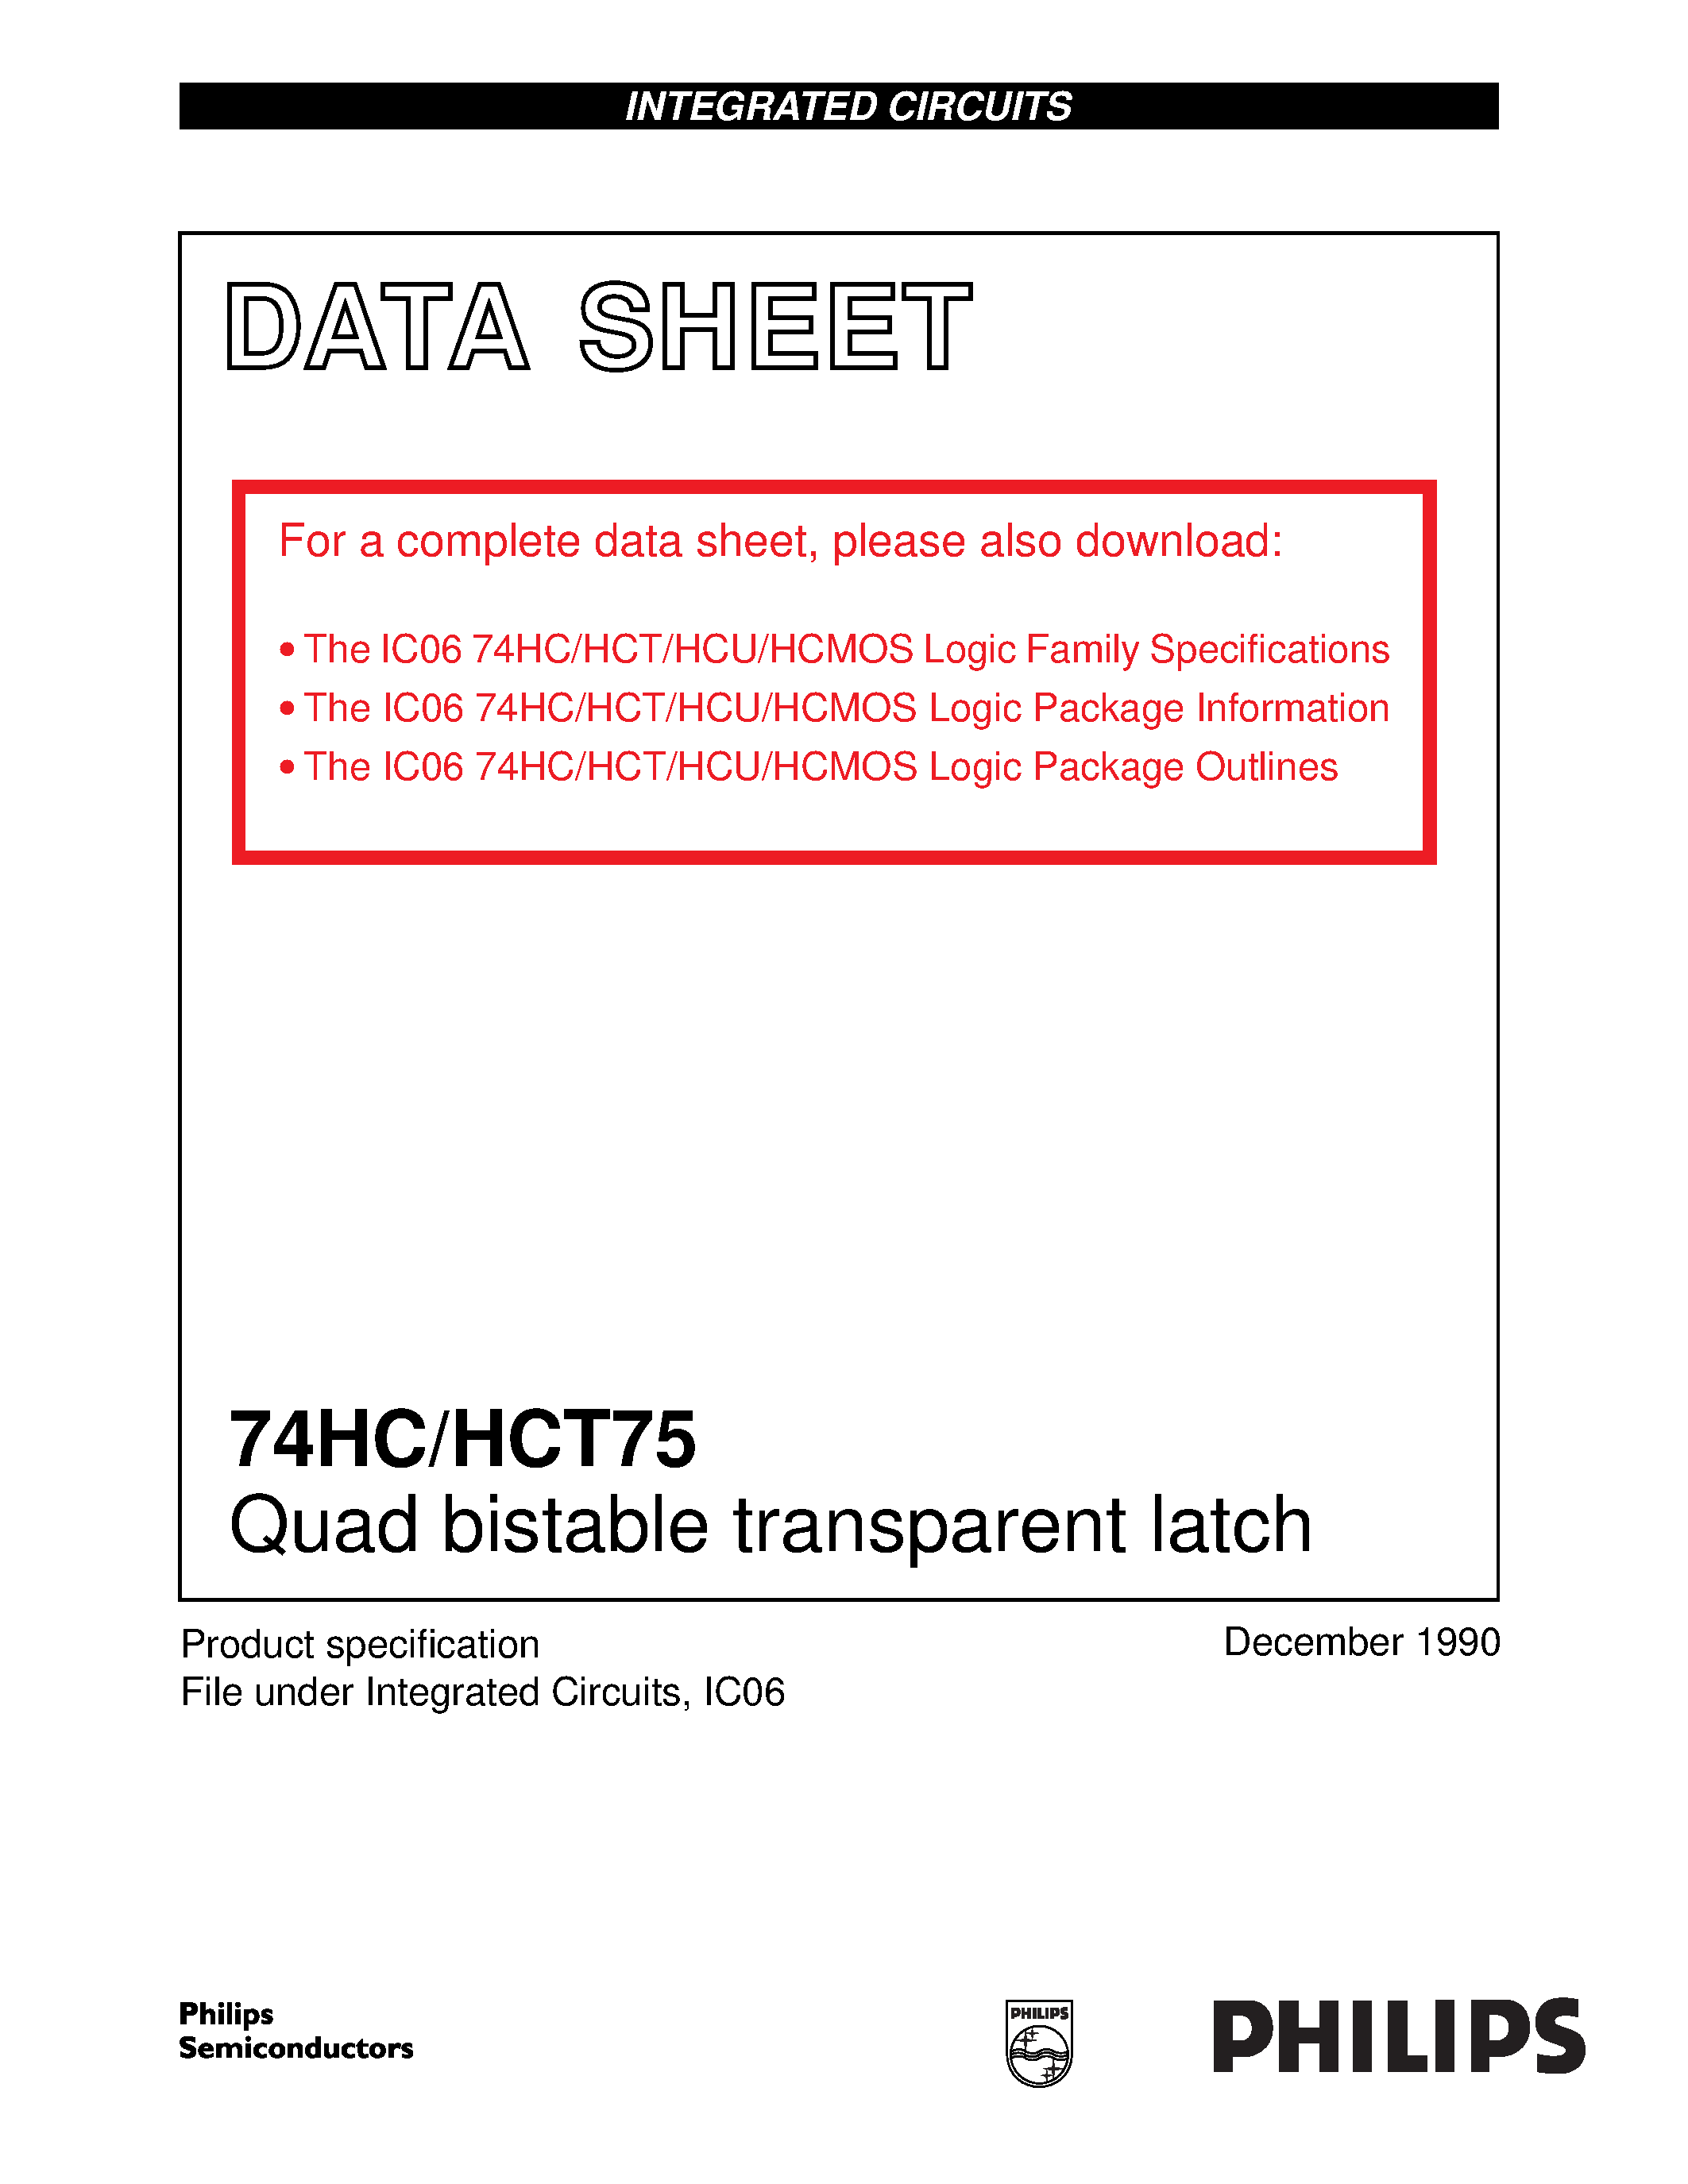 Даташит 74HCT75 - Quad bistable transparent latch страница 1